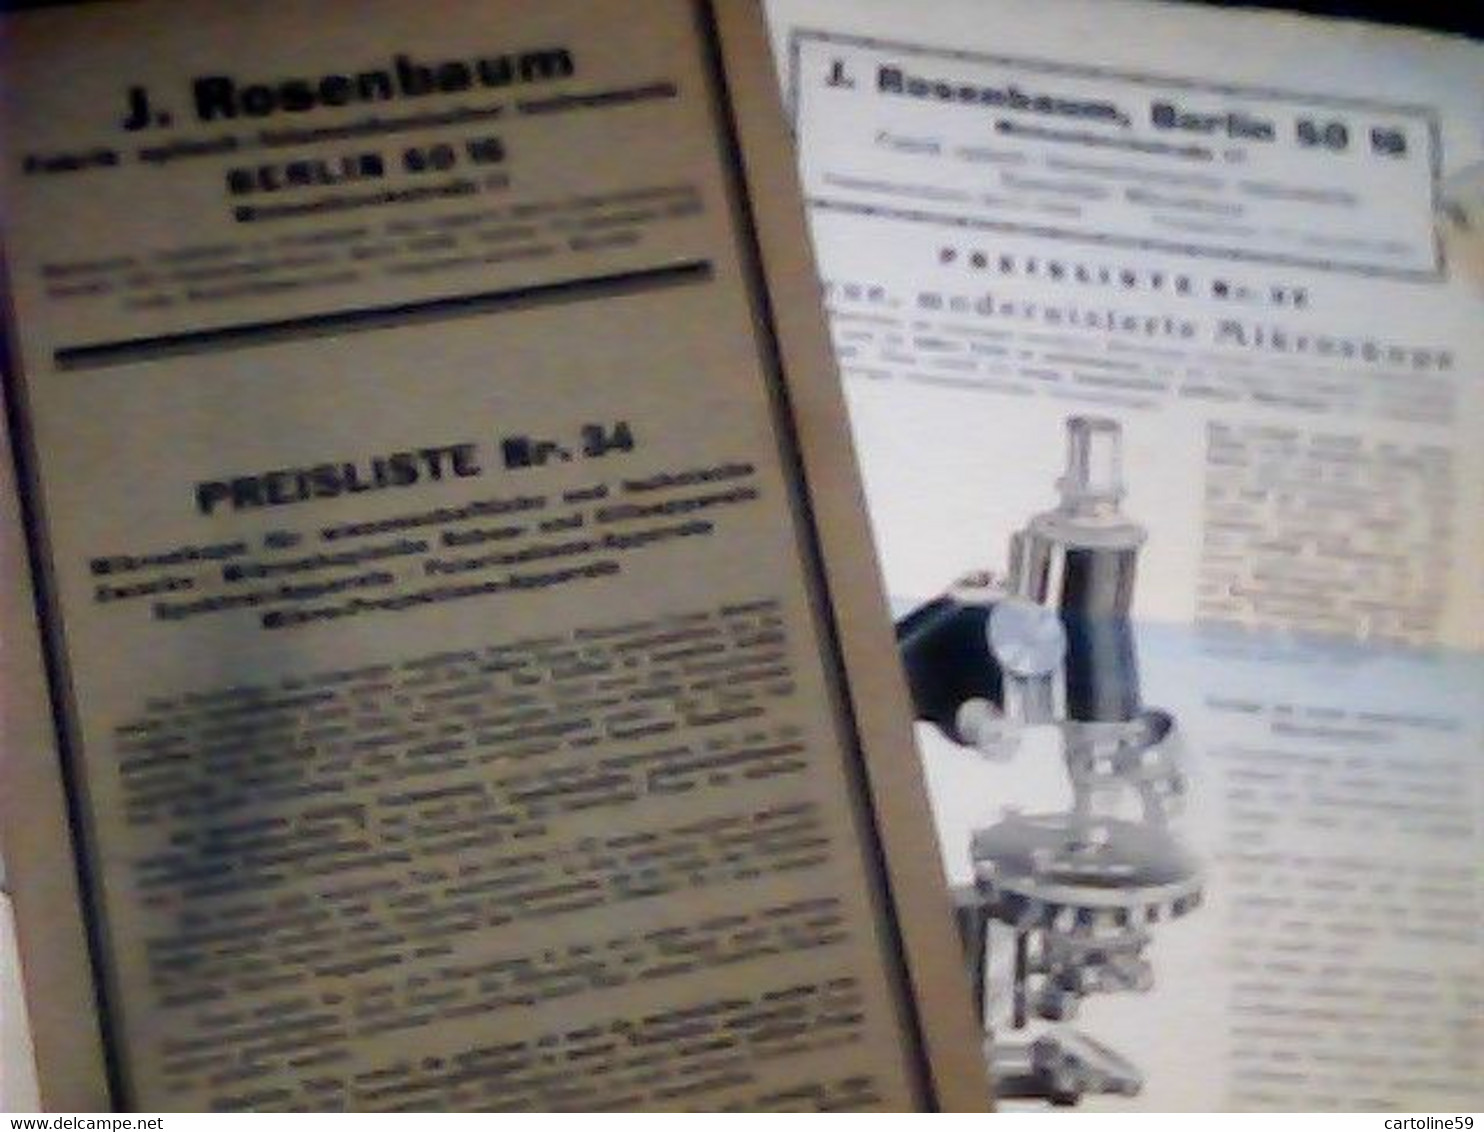 LIBRETTO MICROSCOPIO ROSENBAUM BERLIN FABRIK OPTISCH MIKROSKOP PREISLISTELETTER 1932 IQ8312 - Catálogos